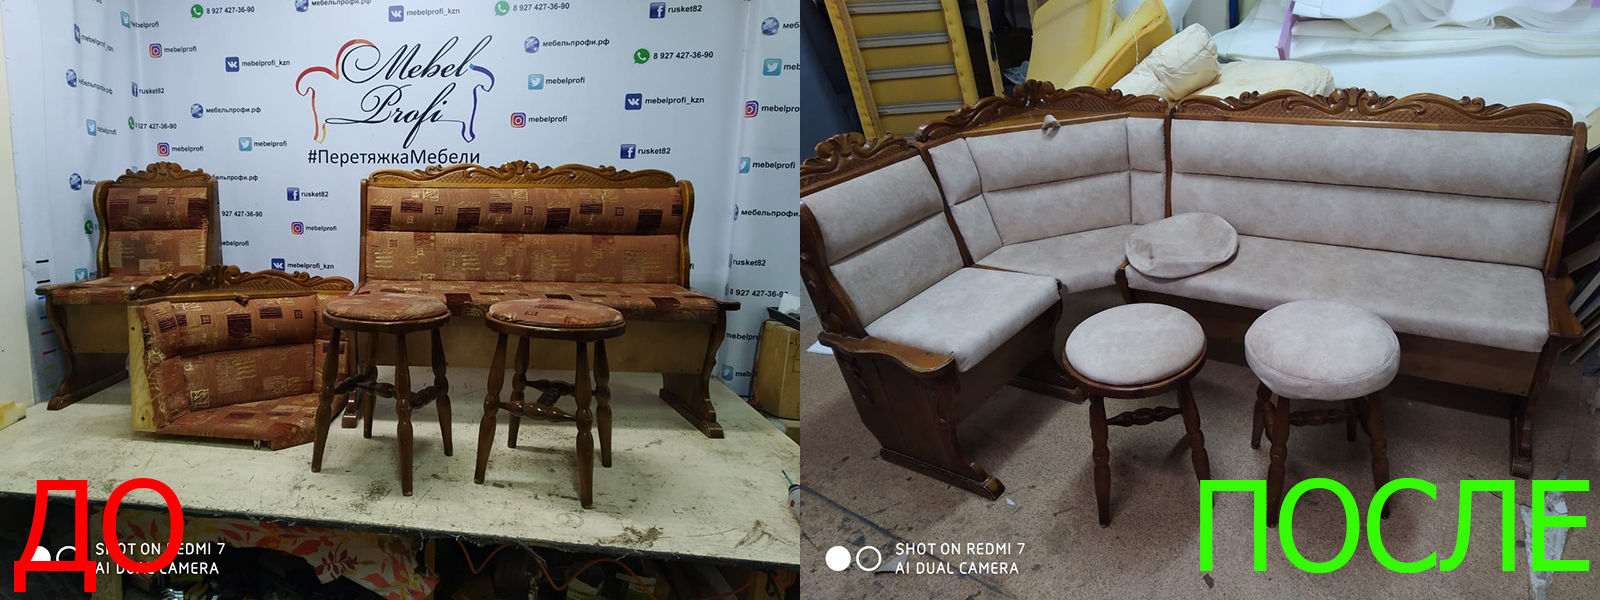 Обивка стульев в Краснодаре от опытных мастеров компании MebelProfi - 100% гарантия